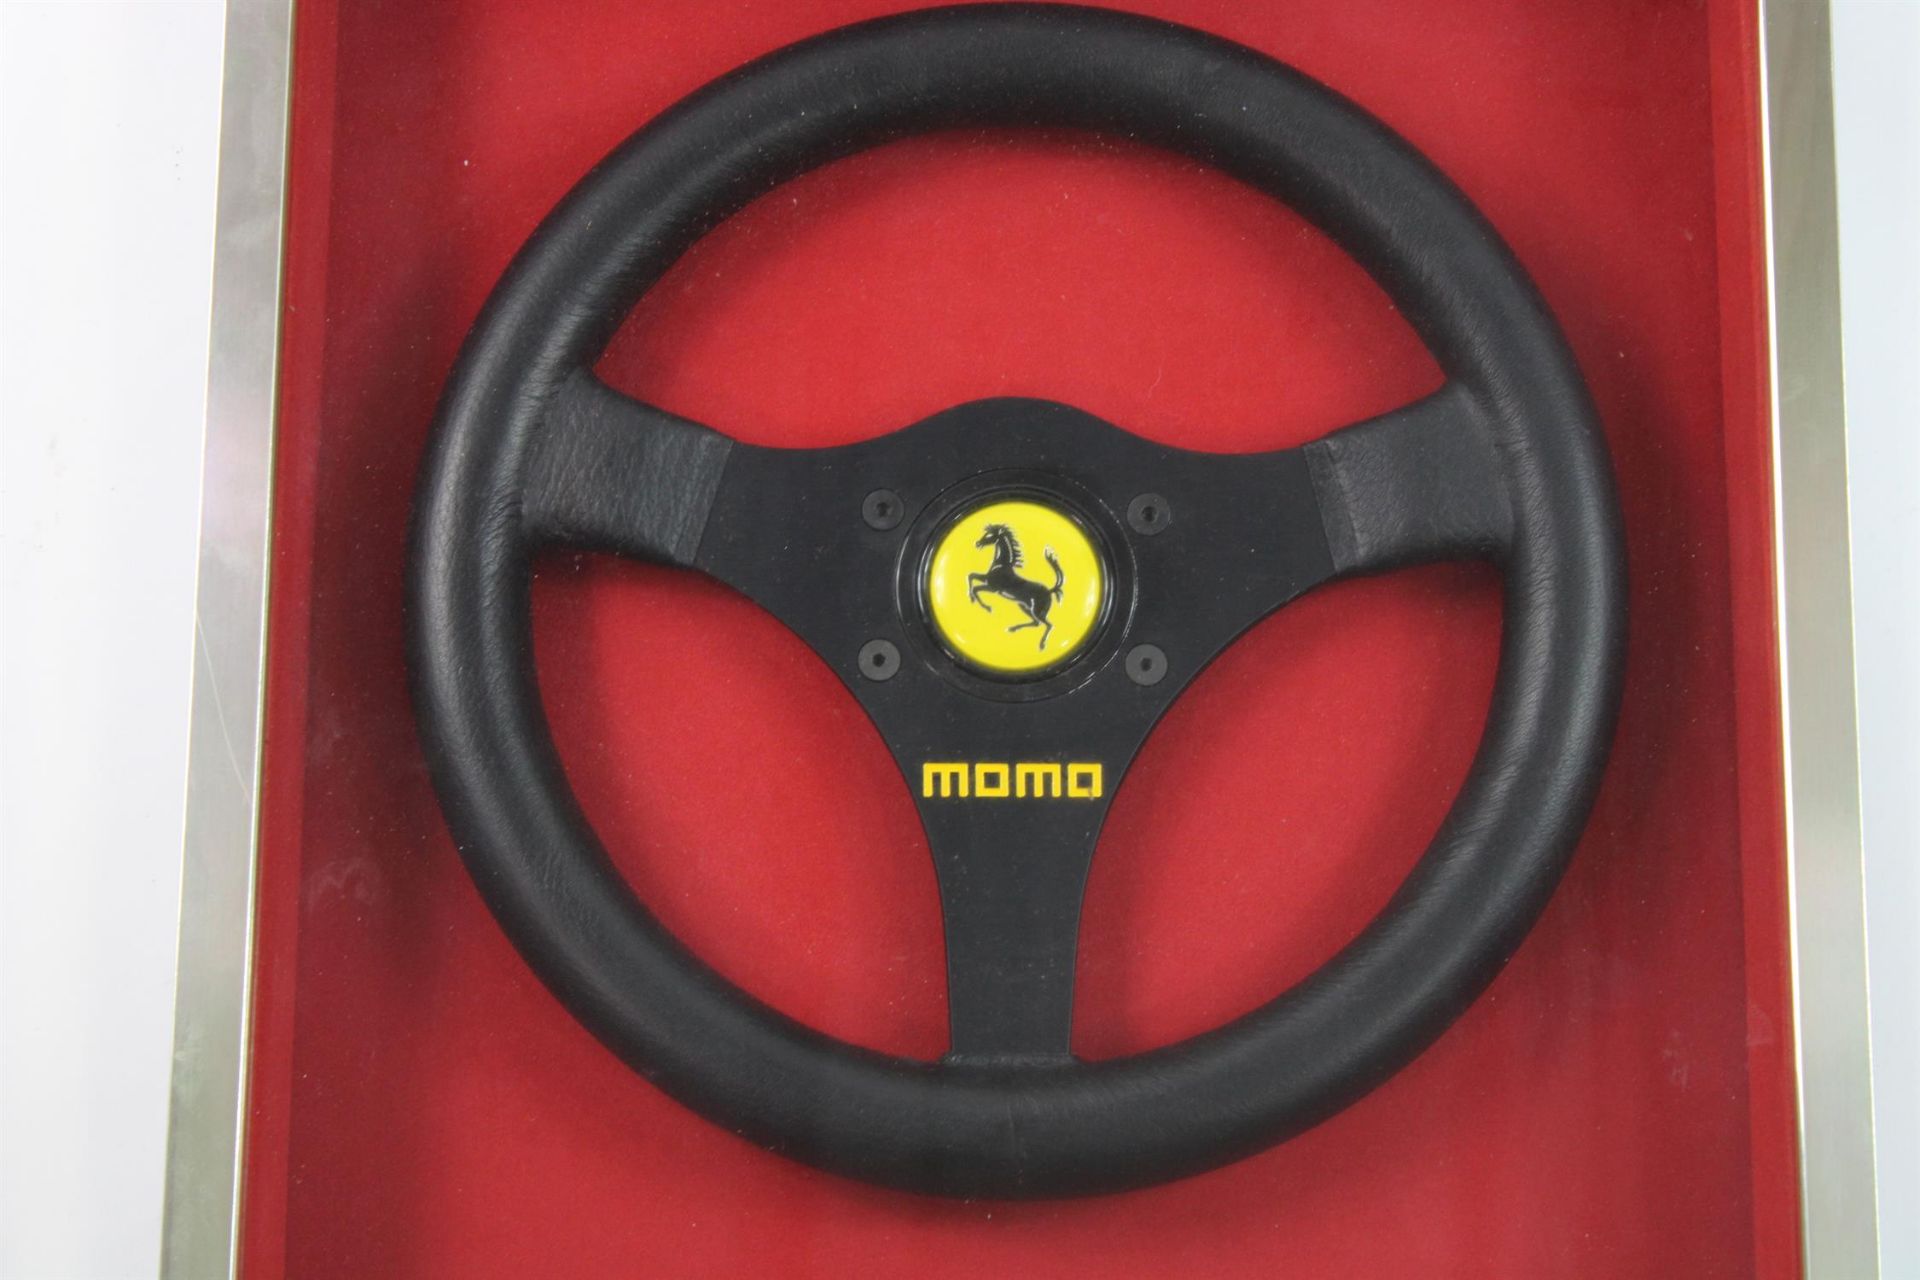 1992 Ferrari F1 MOMO Steering Wheel Framed - Image 2 of 7